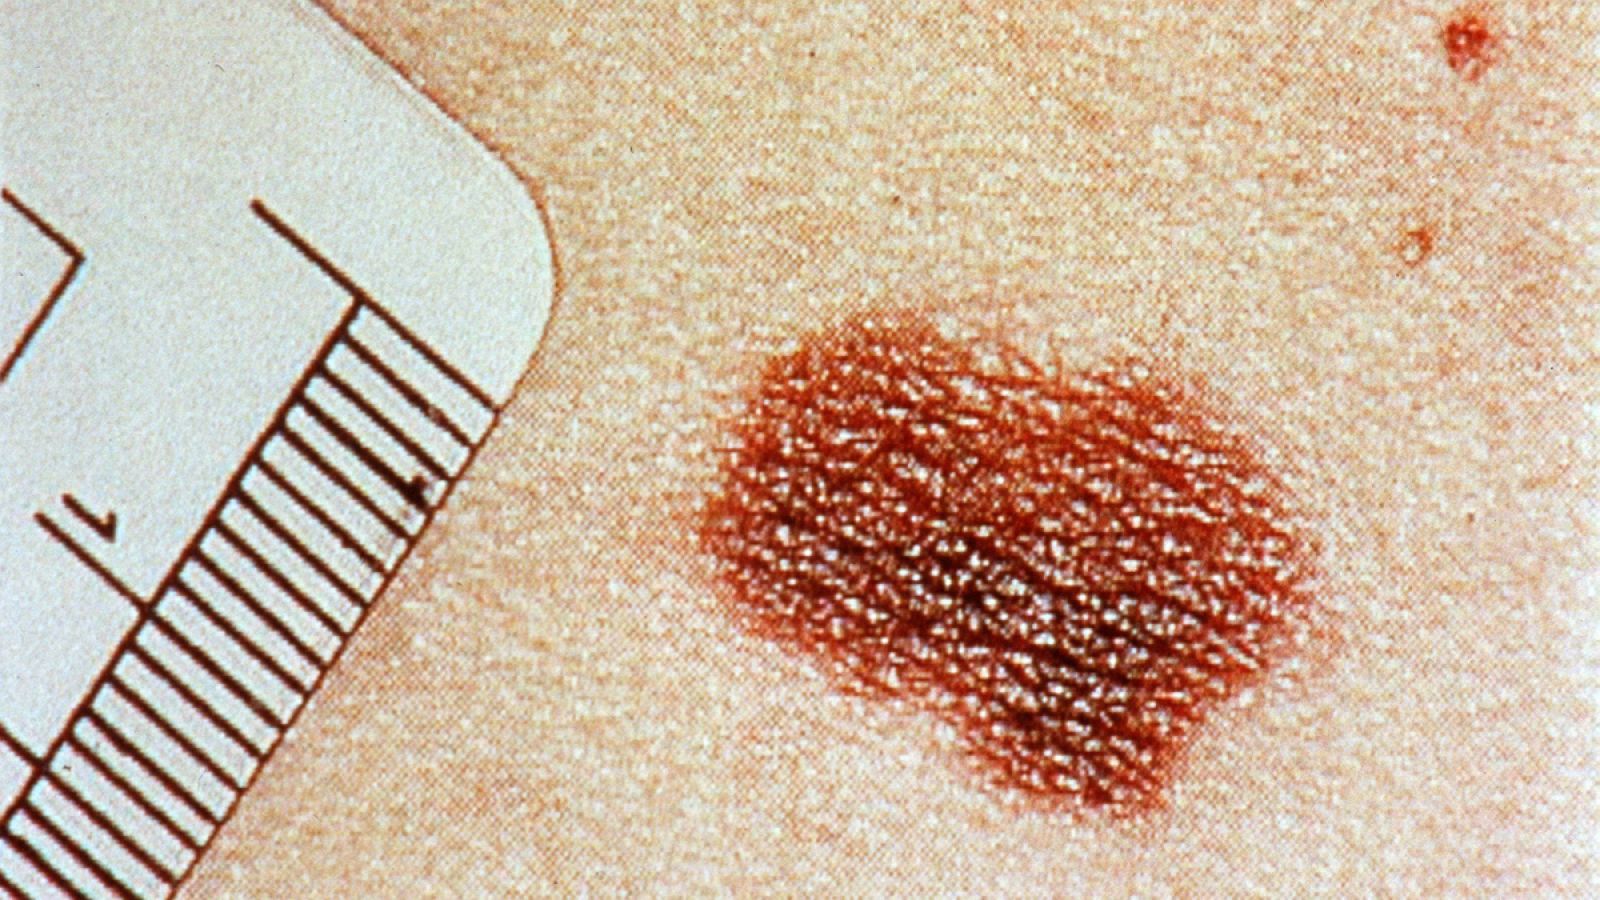 El melanoma, el carcinoma basocelular y el carcinoma epidermoide son los tres cánceres de piel más frecuentes.